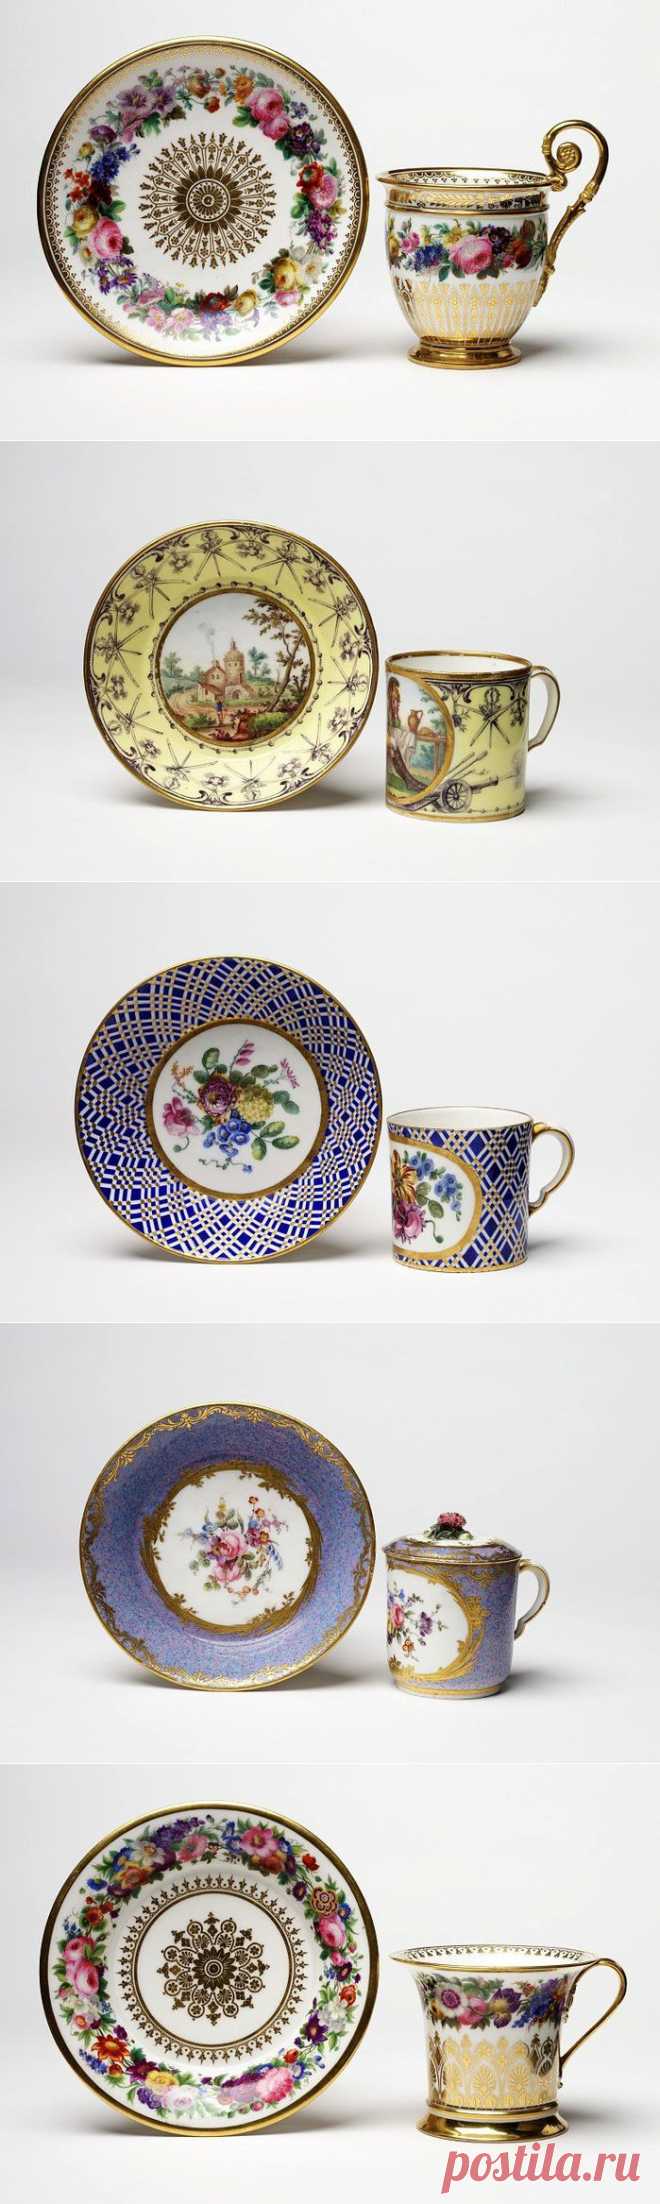 Французские фарфоровые чашки 18-19 век